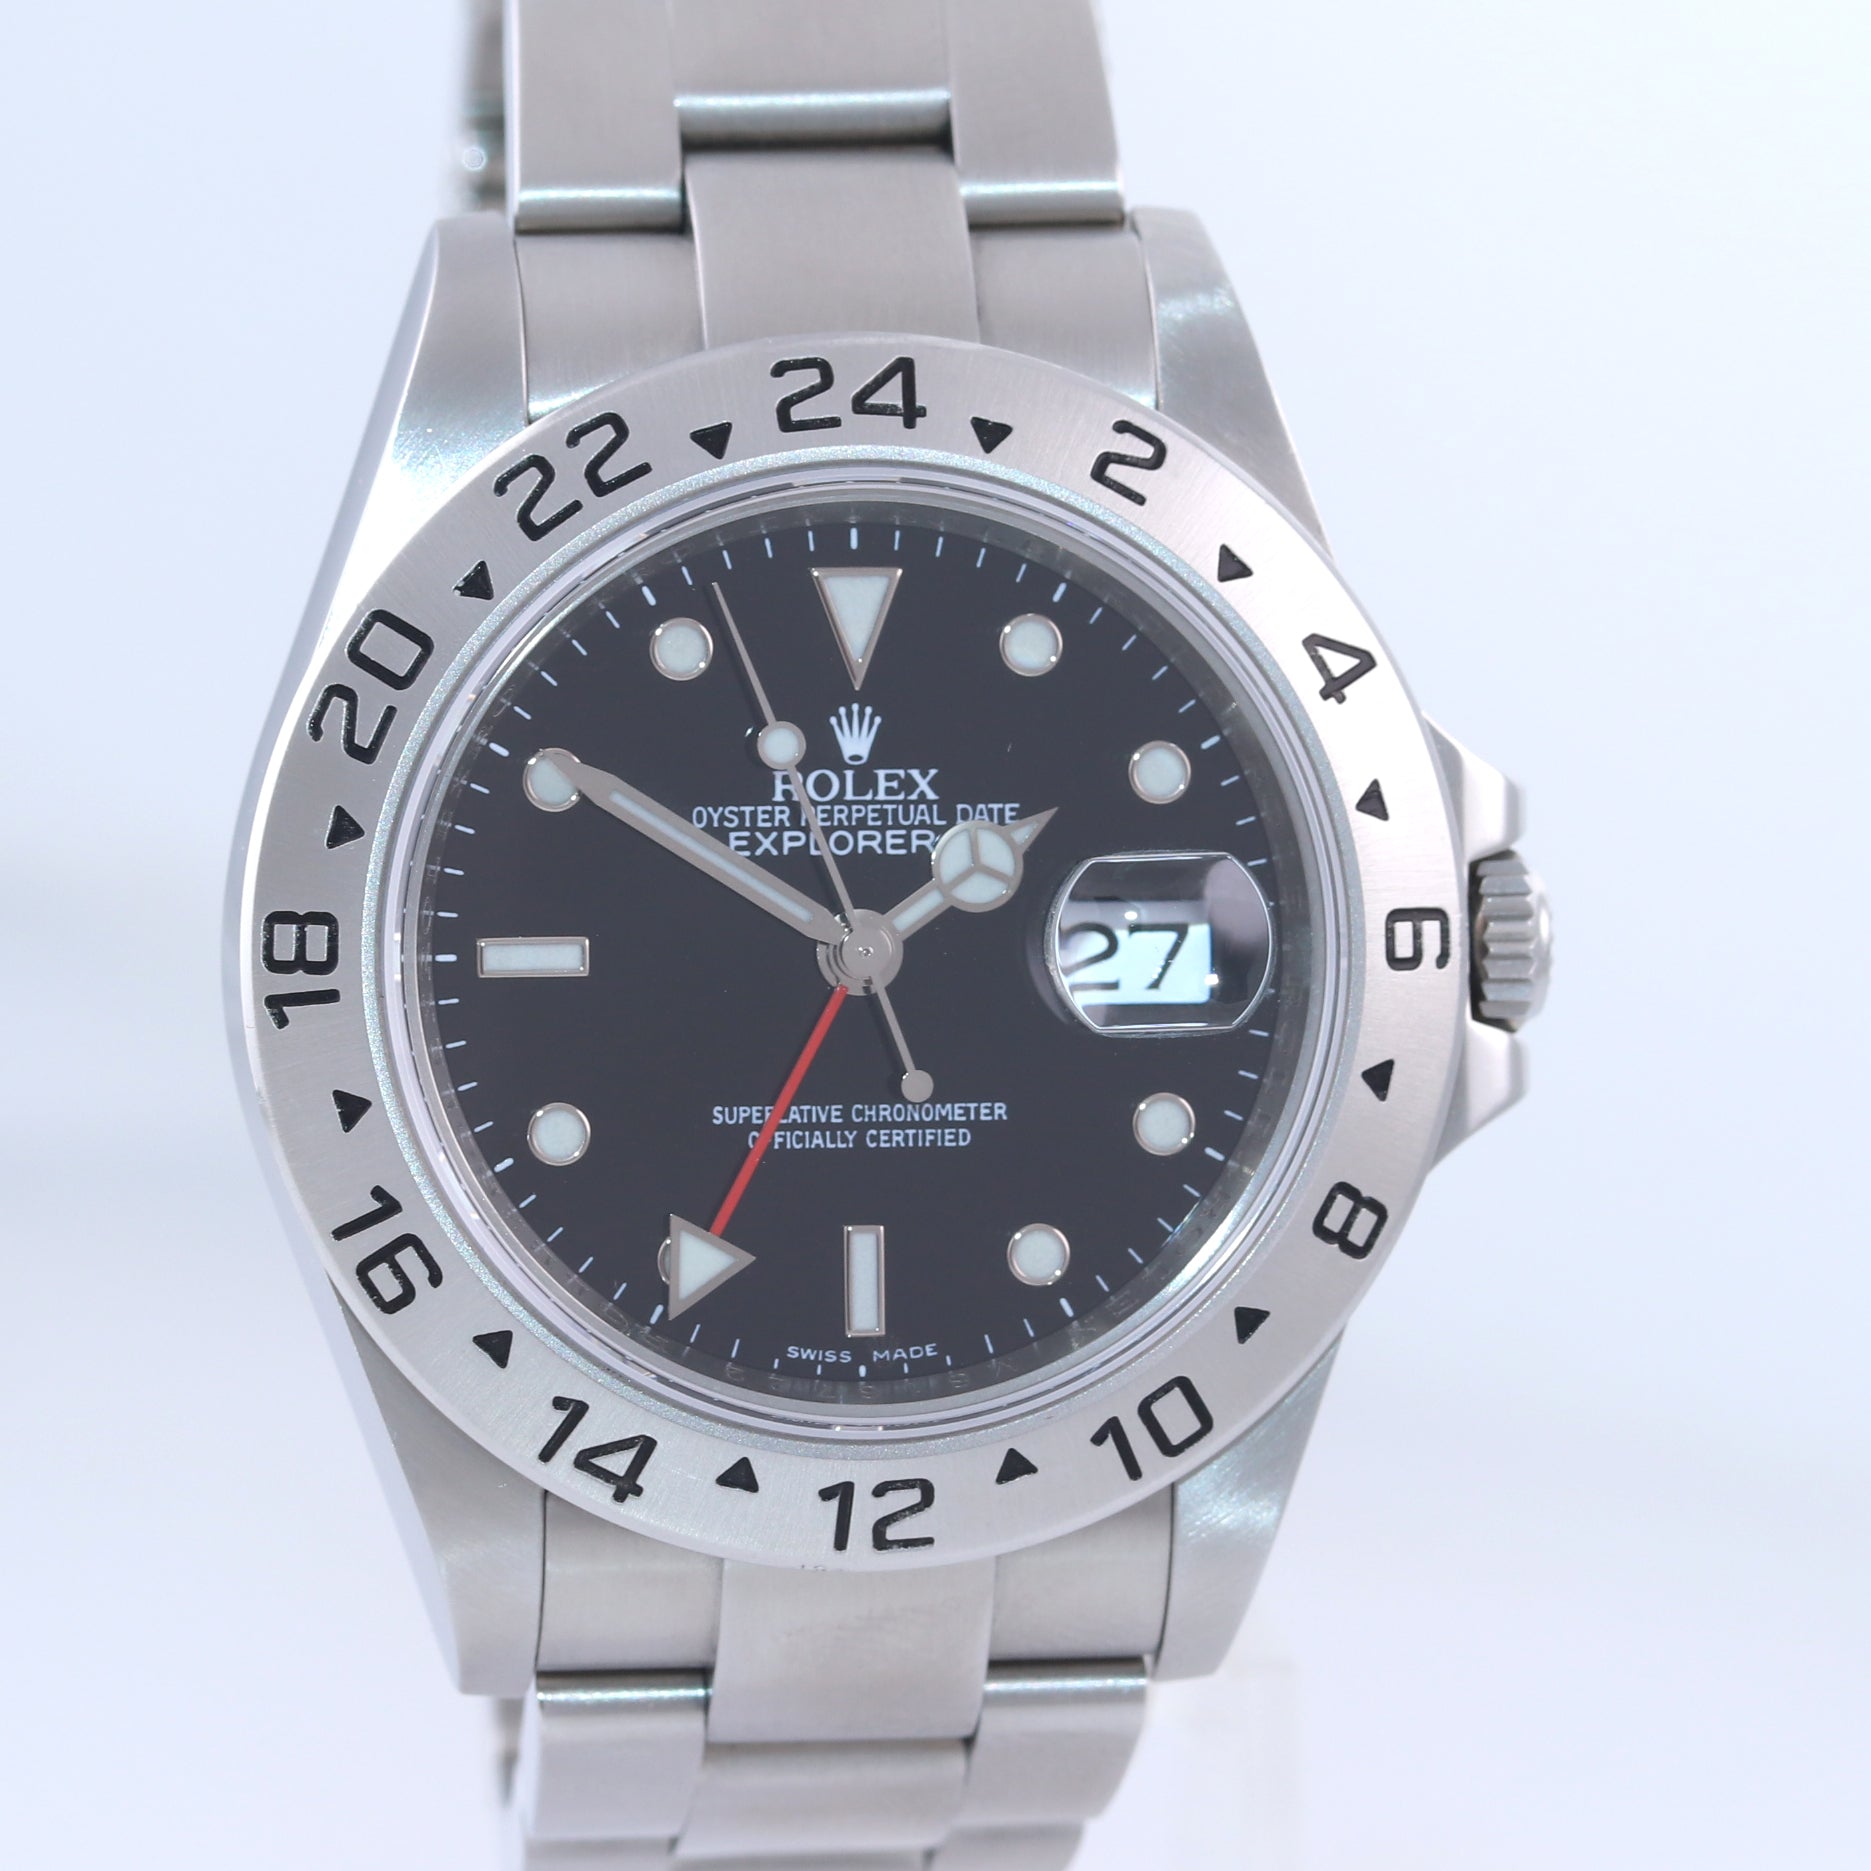 MINT 2009 ENGRAVED REHAUT Rolex Explorer II 16570 Black Date 3186 Watch Box